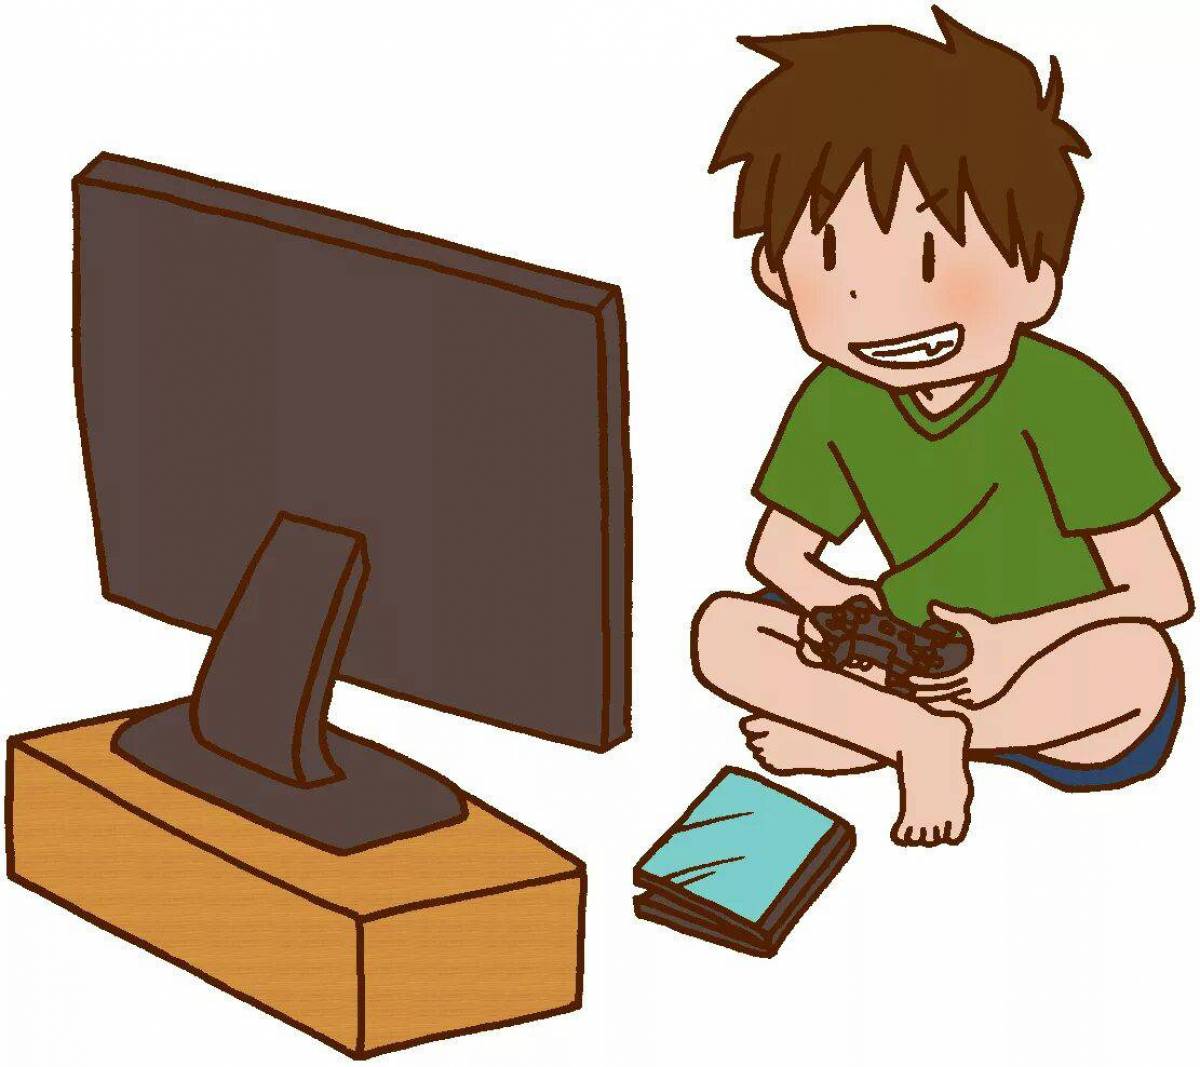 Games can he play. Мальчик играющий в компьютерную игру. Компьютер картинка для детей. Компьютер мультяшный. Компьютерные игры мультяшные.